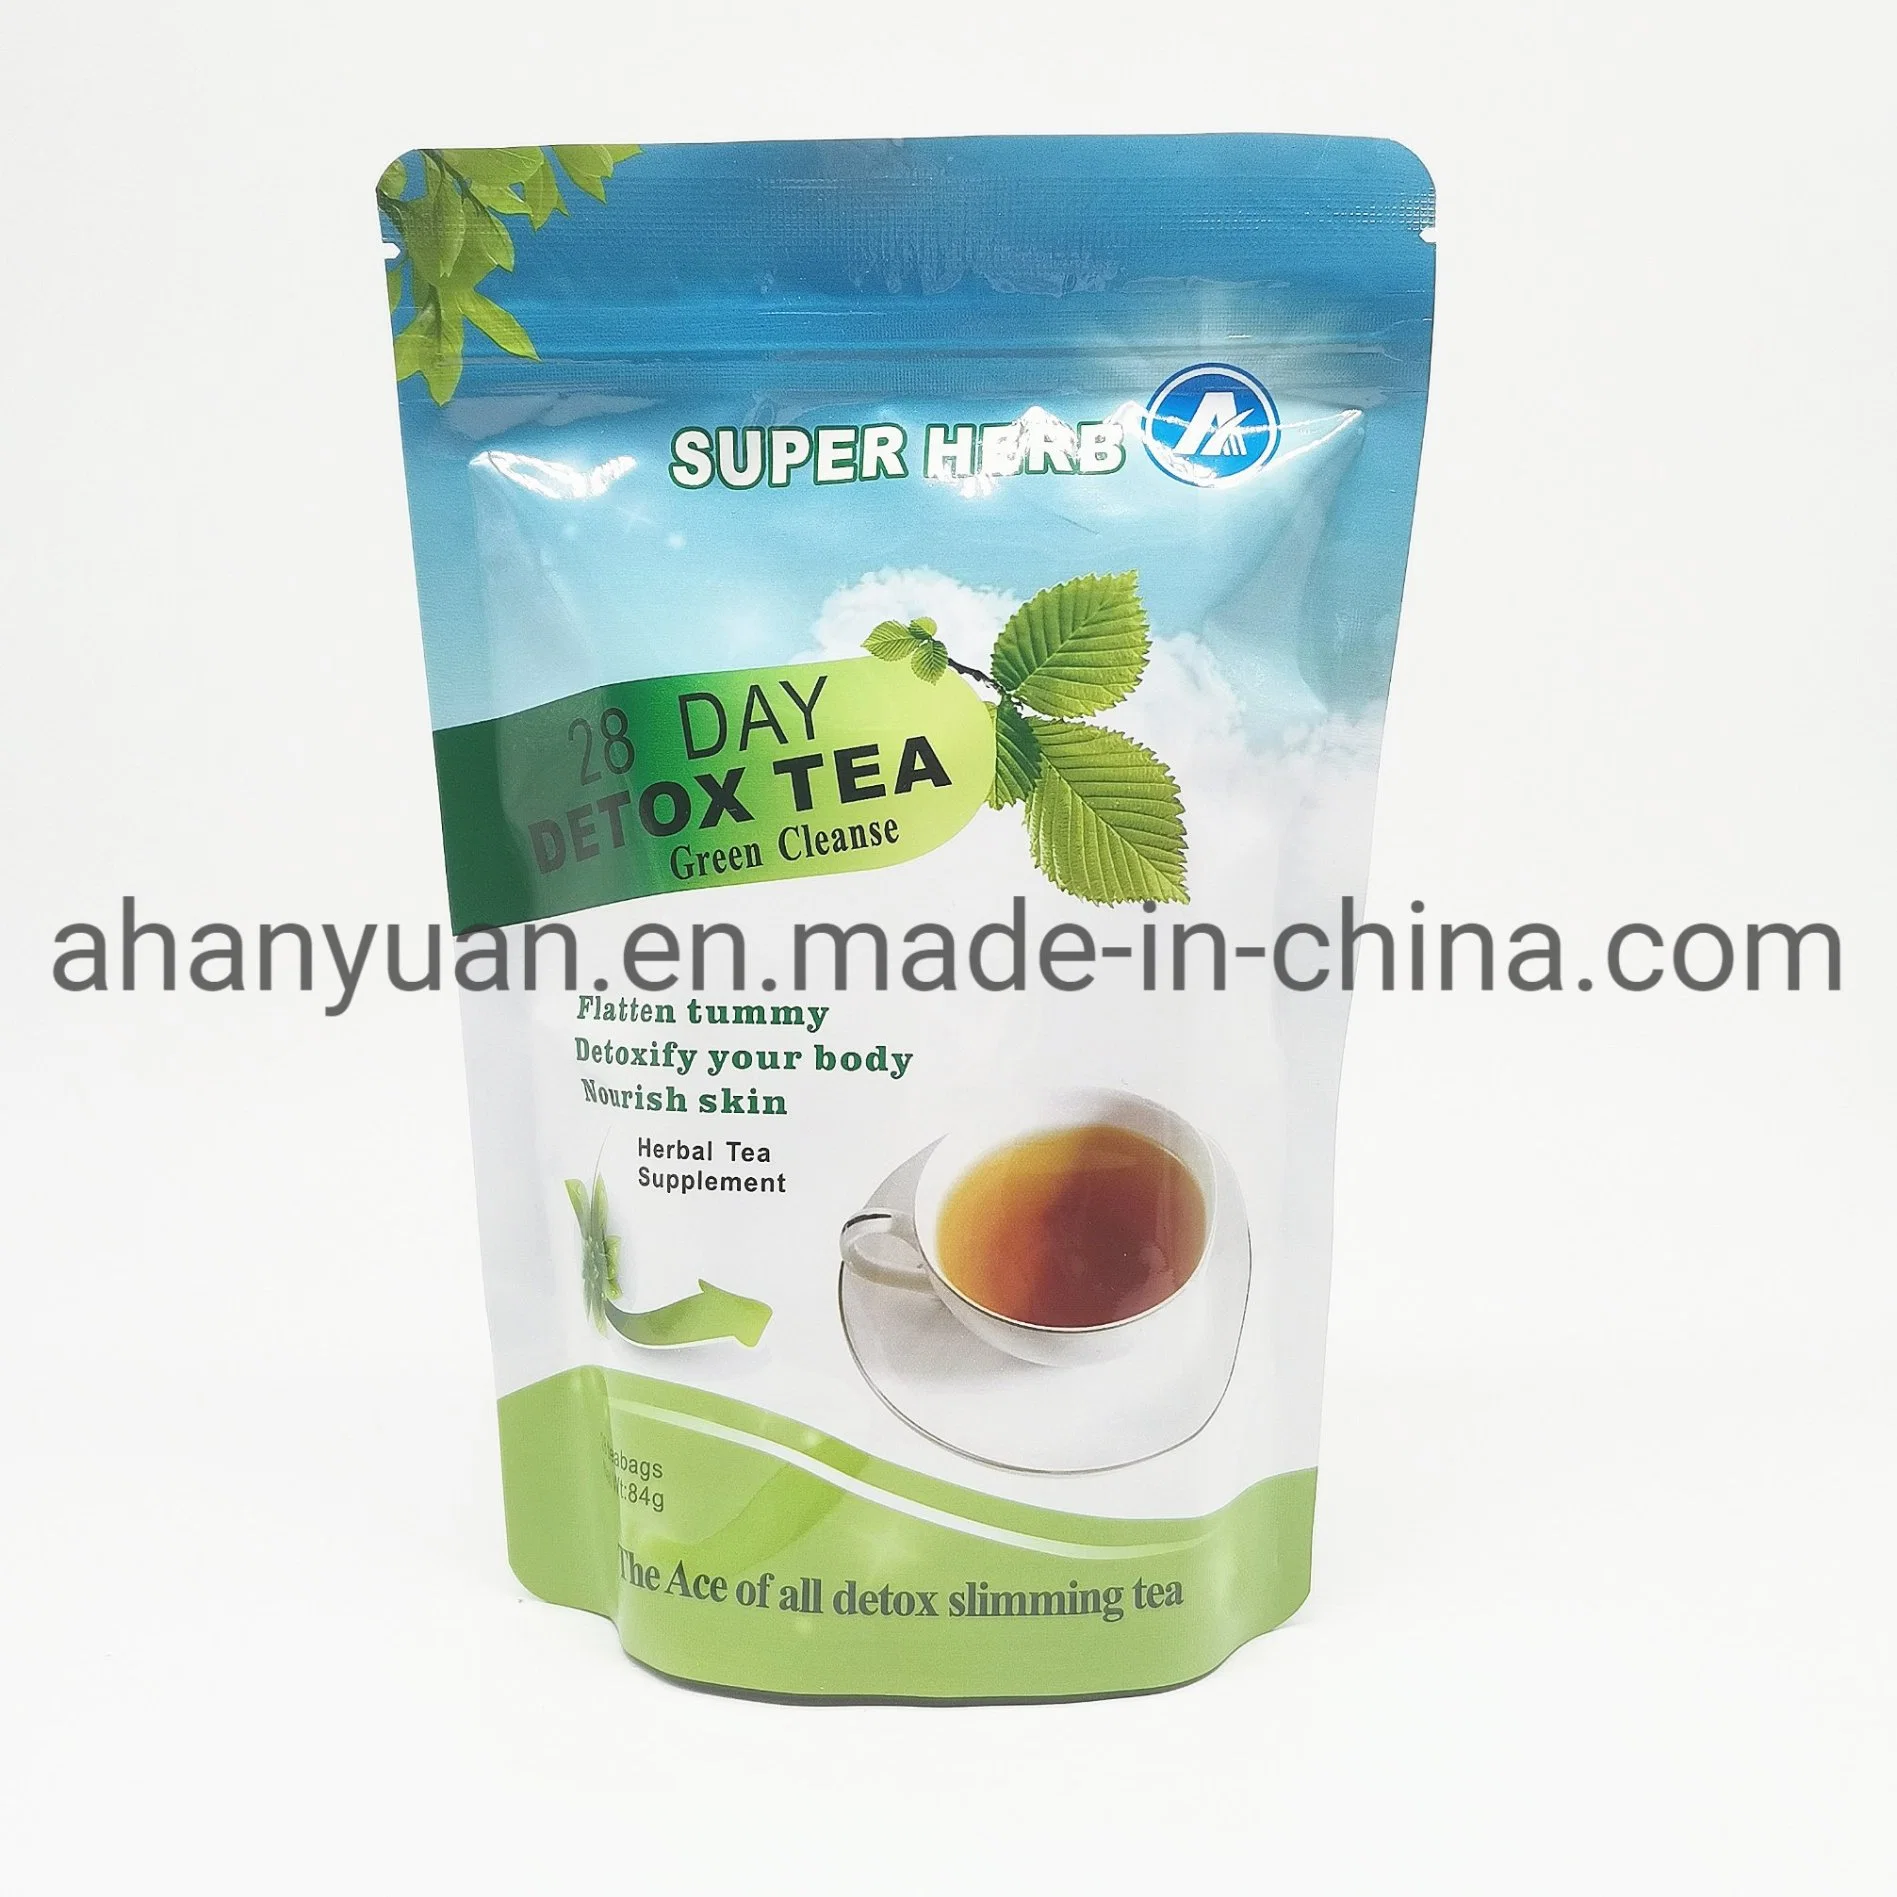 28day Detox Tea Super Herb Anyuan